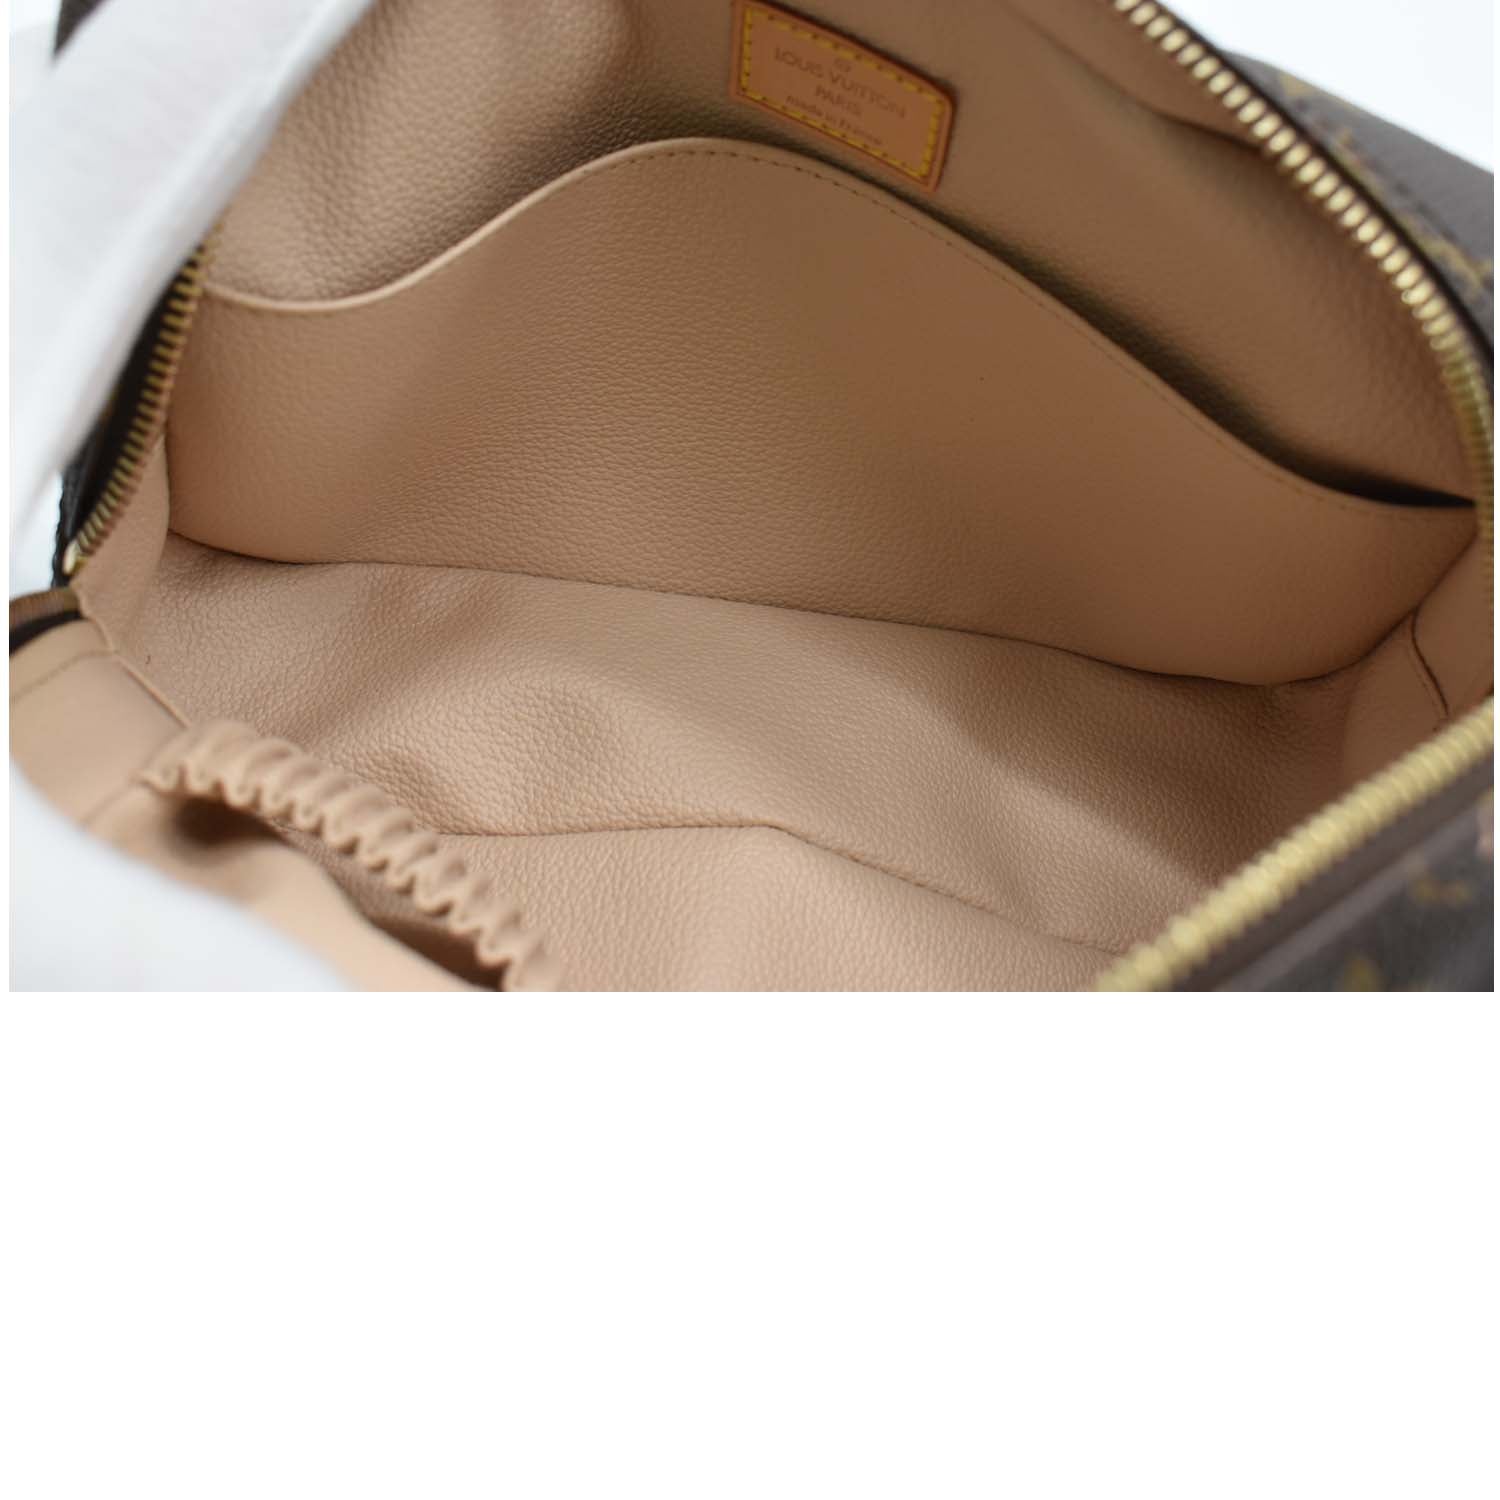 Trousse de toilette leather vanity case Louis Vuitton Brown in Leather -  34706274